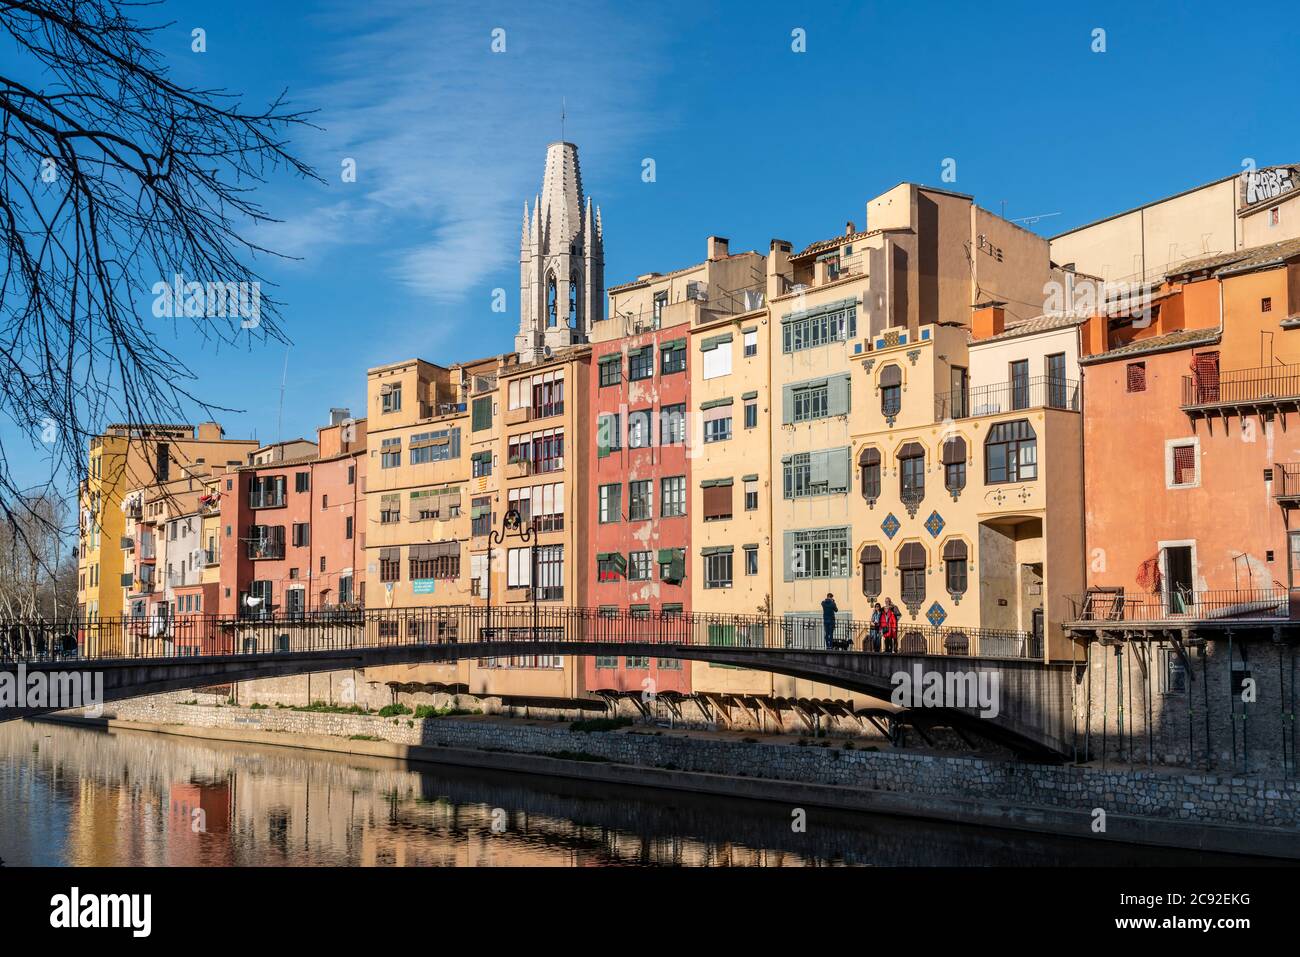 Bunte Häuser am Ufer des Onyar in Girona, Spanien bunten Häuser am Fluß Onyar, Girona, Katalonien, Spanien Stockfoto